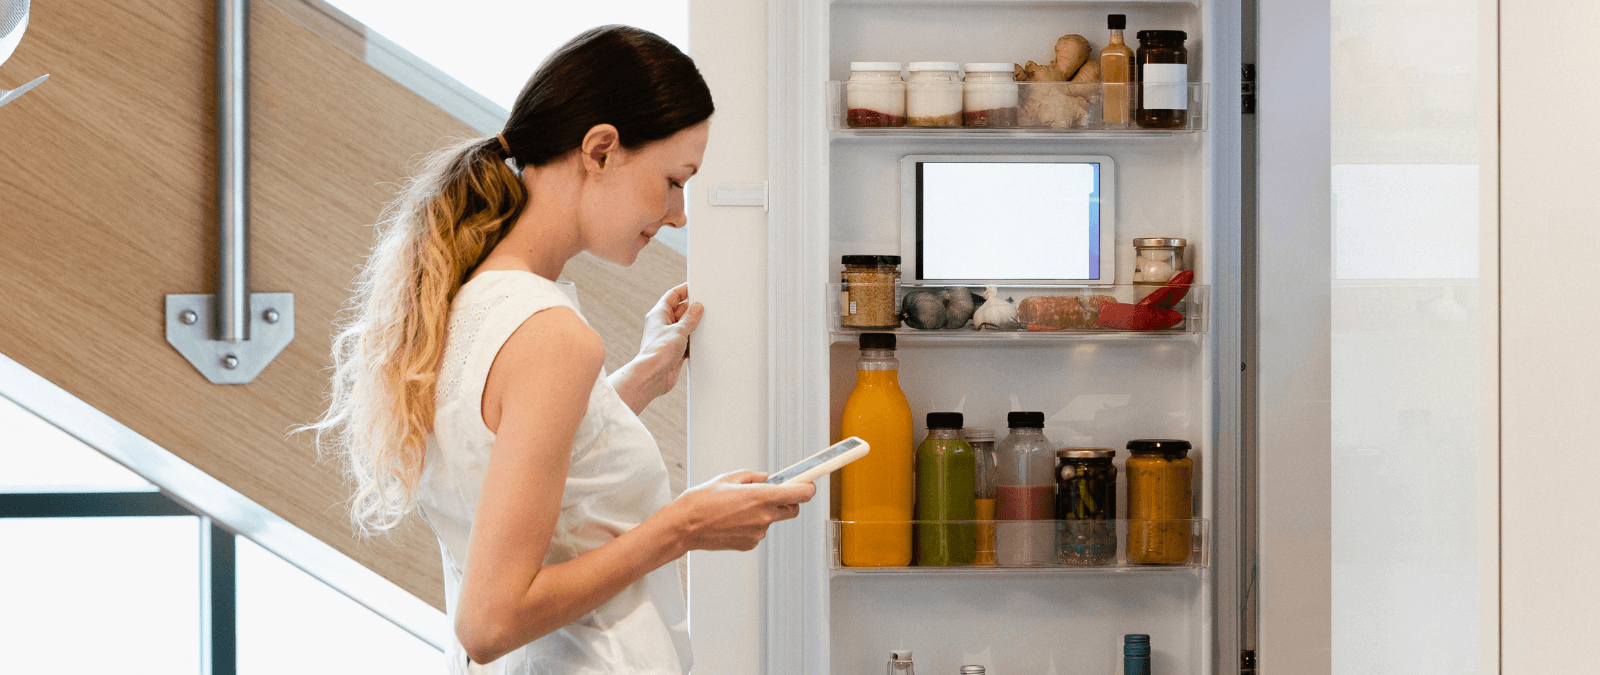 De la aspiradora al frigorífico: qué es la inteligencia artificial de las cosas (AIoT) y cómo se usa la IA a nuestro alrededor